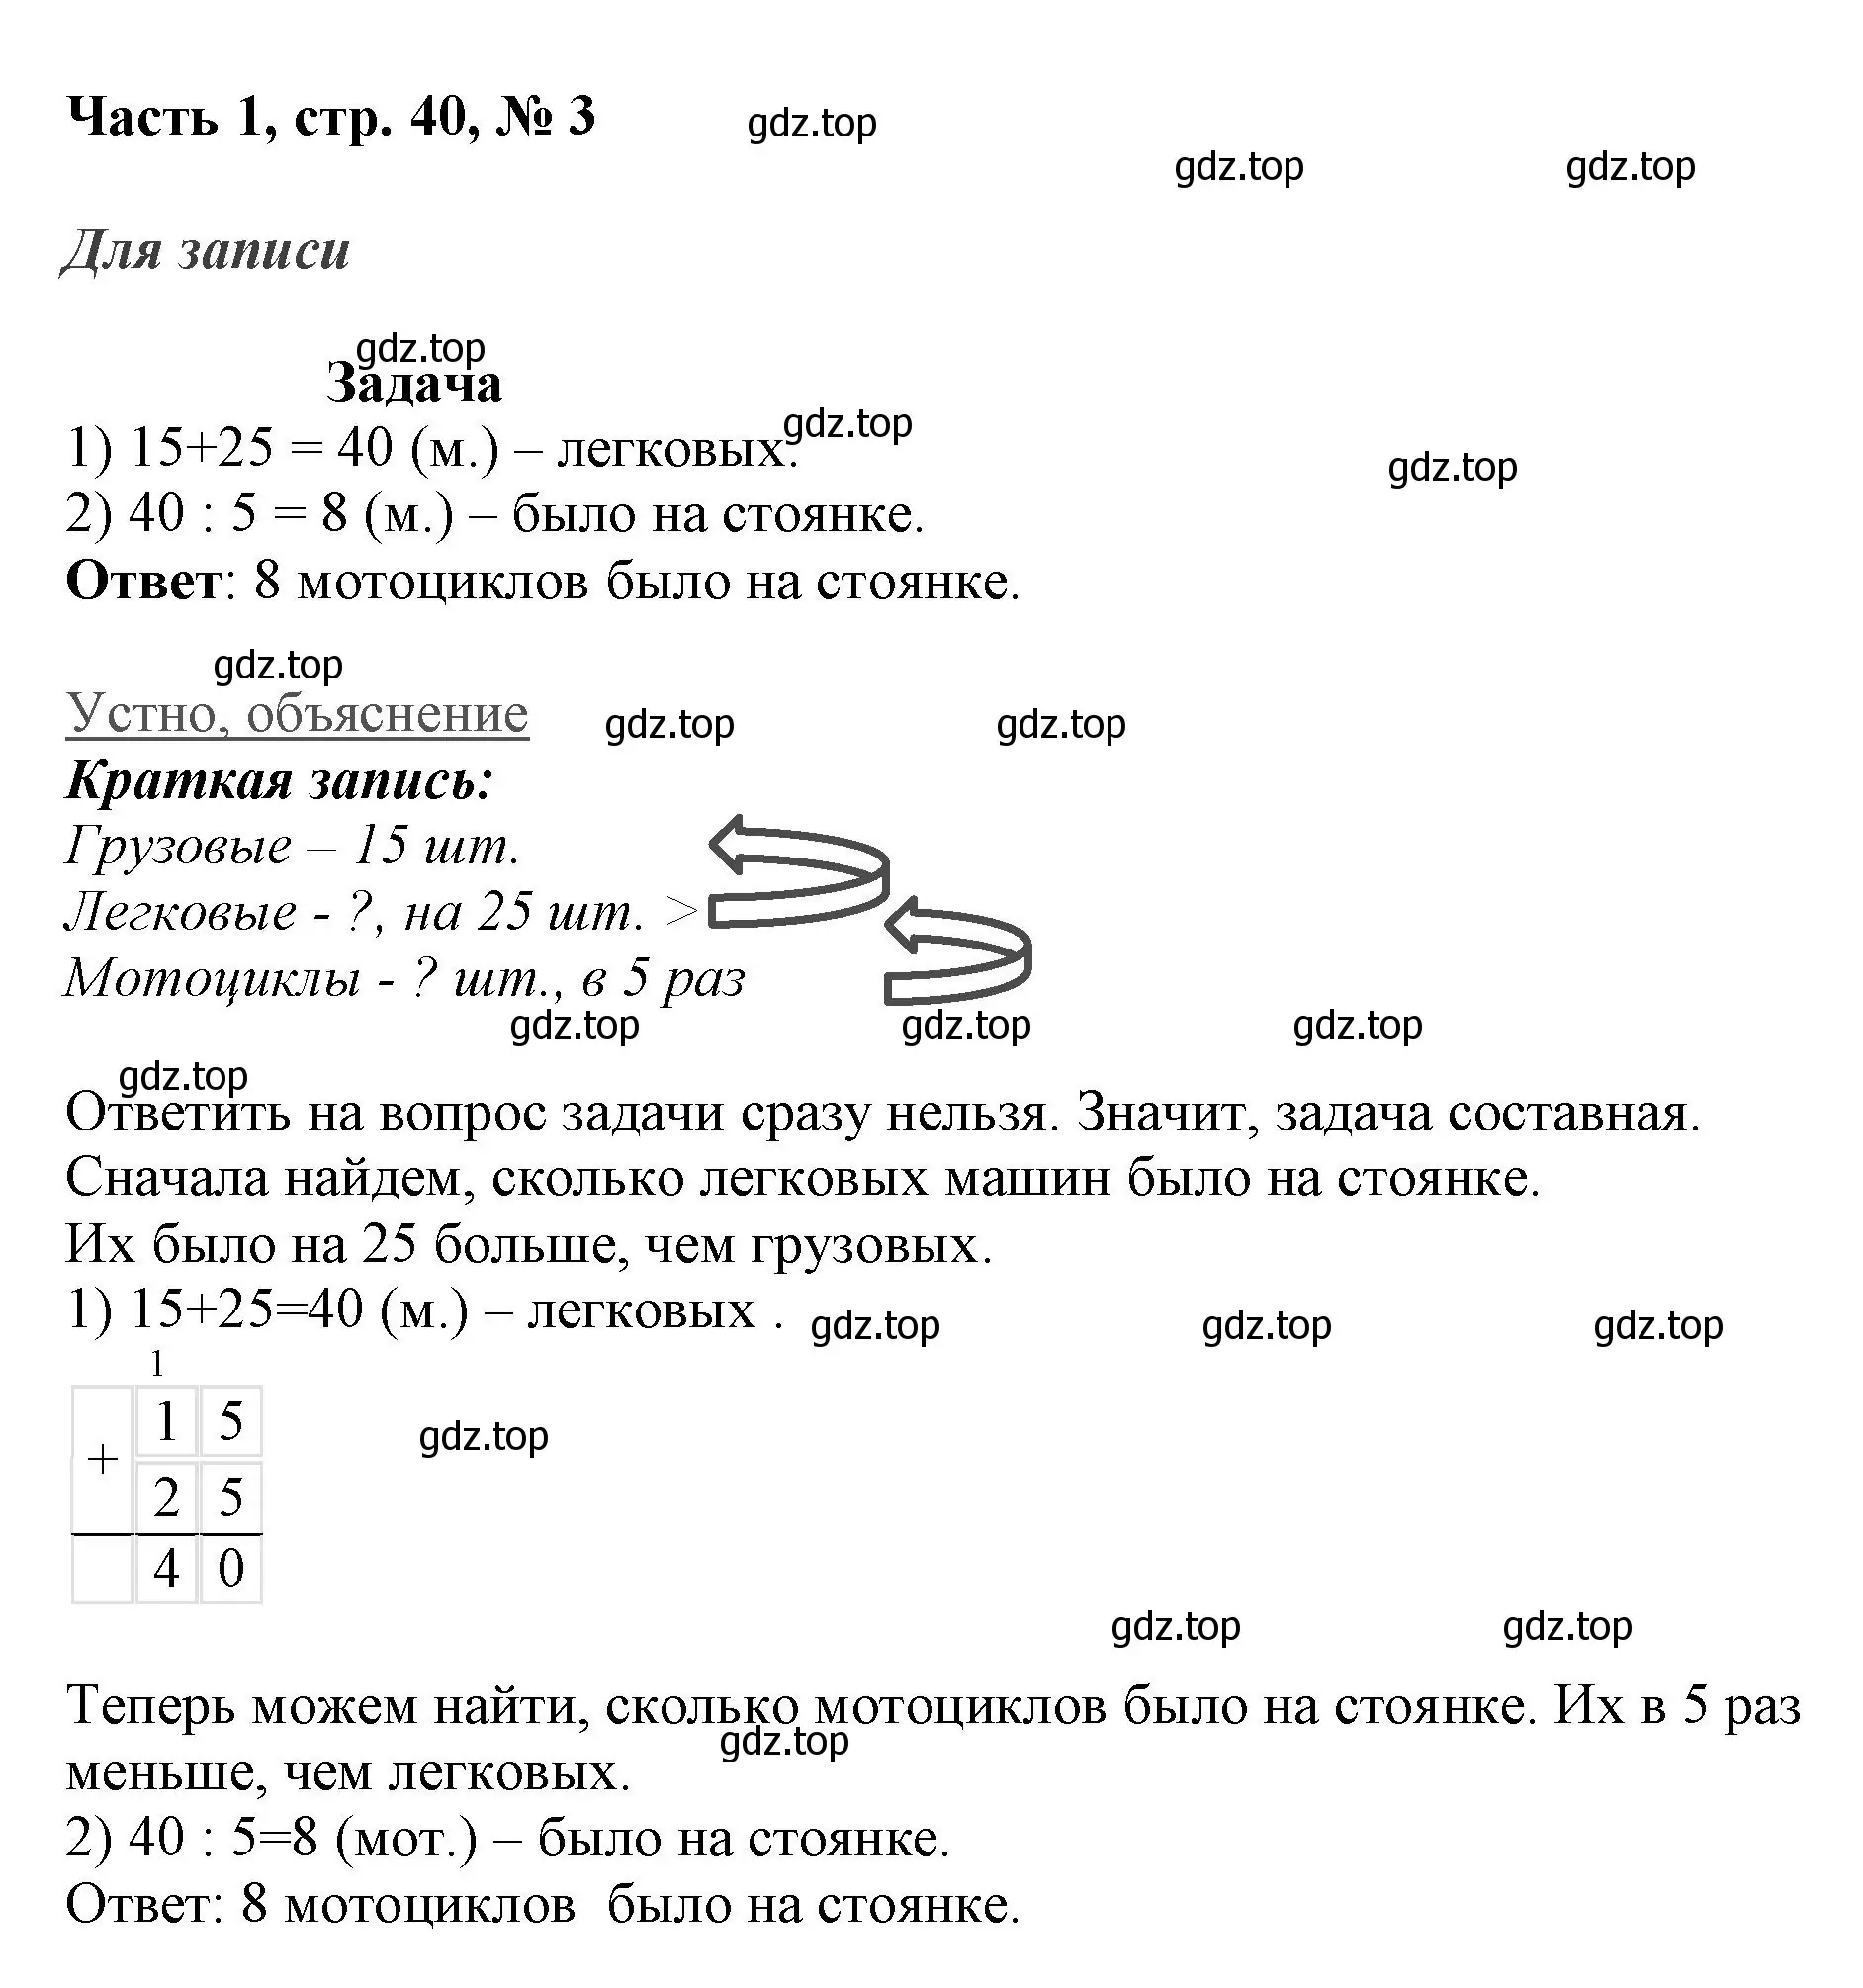 Решение номер 3 (страница 40) гдз по математике 3 класс Моро, Бантова, учебник 1 часть